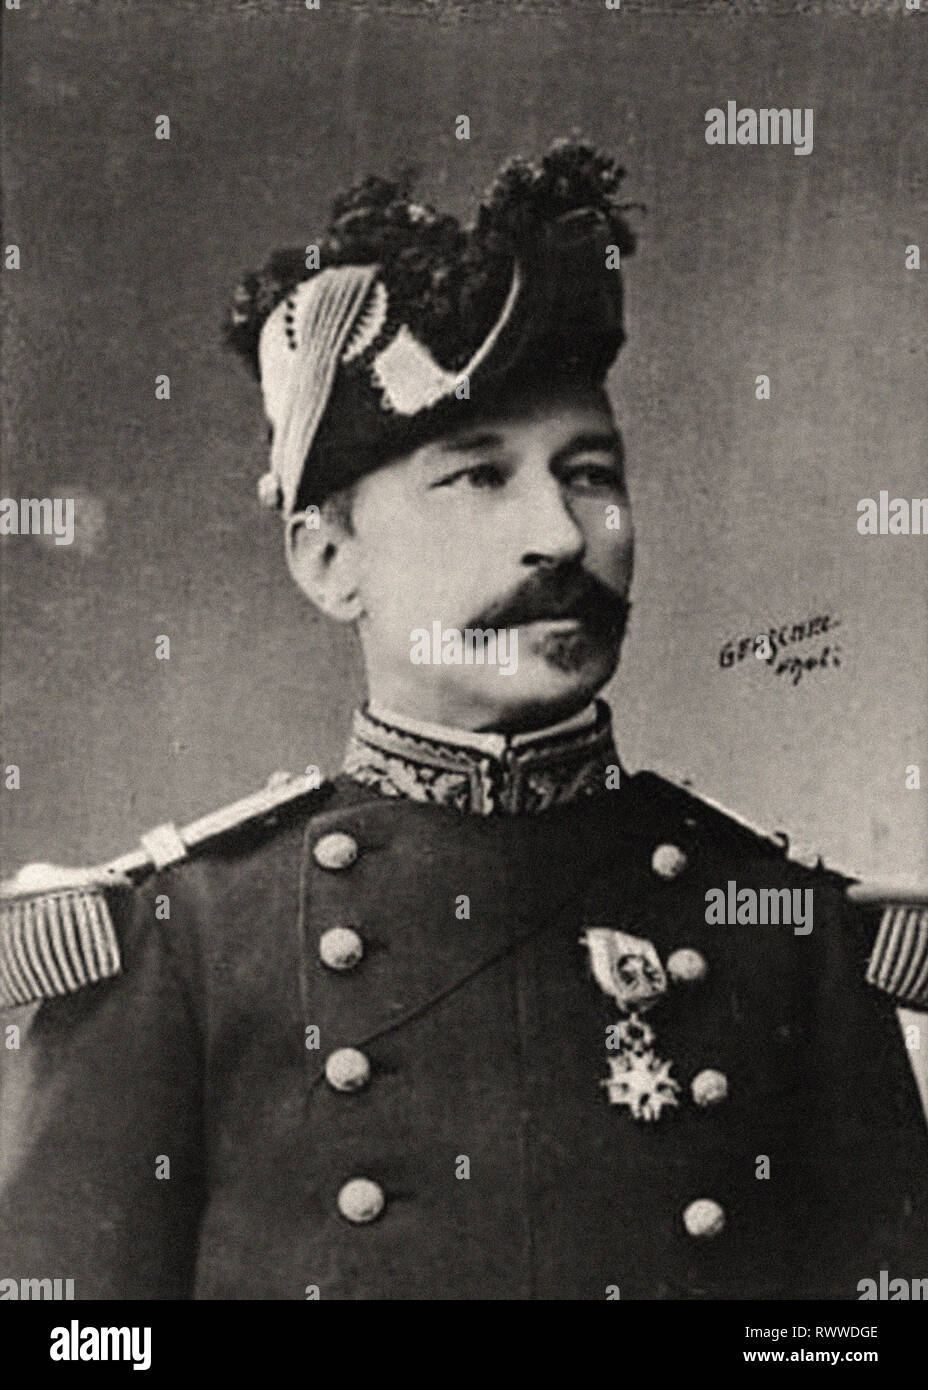 Ritratto fotografico di Général André Foto Stock